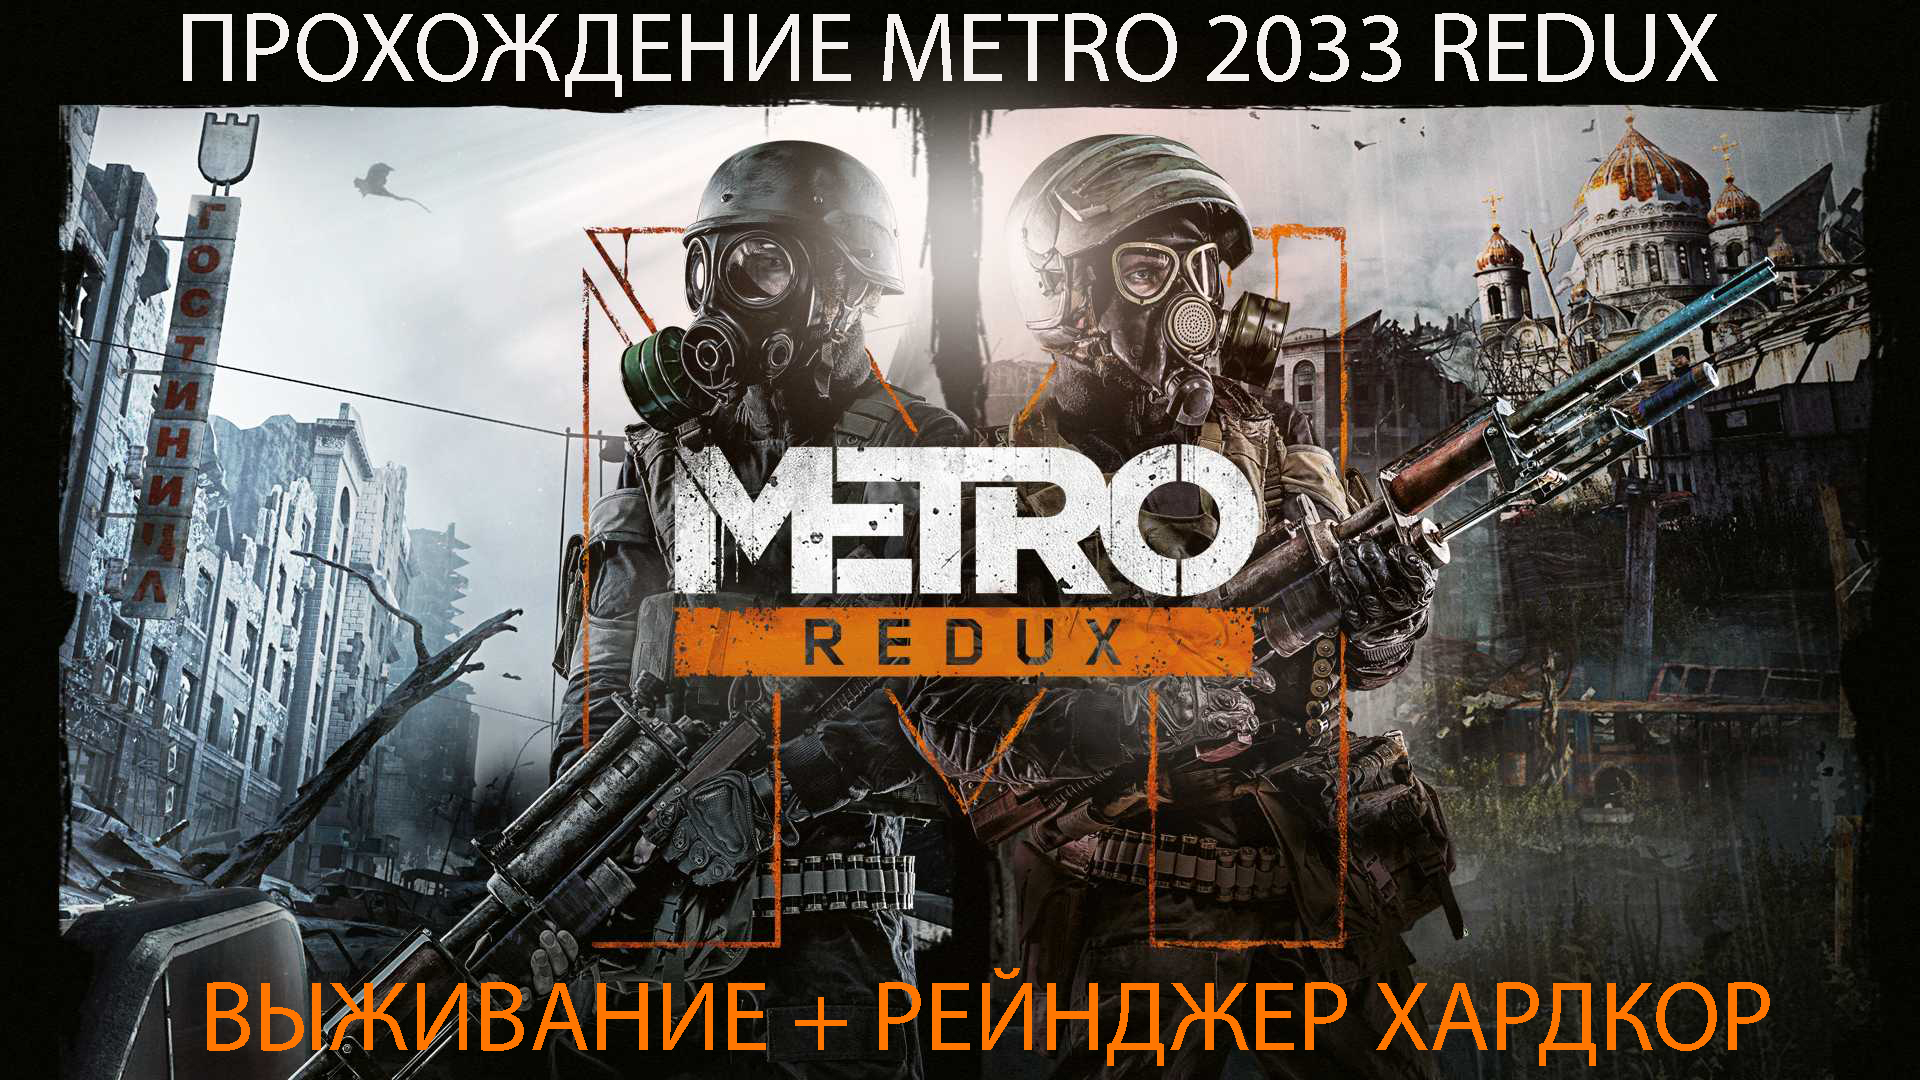 Прохождение Metro 2033 Redux V - Горячая Война - Рейнджер Хардкор.mp4